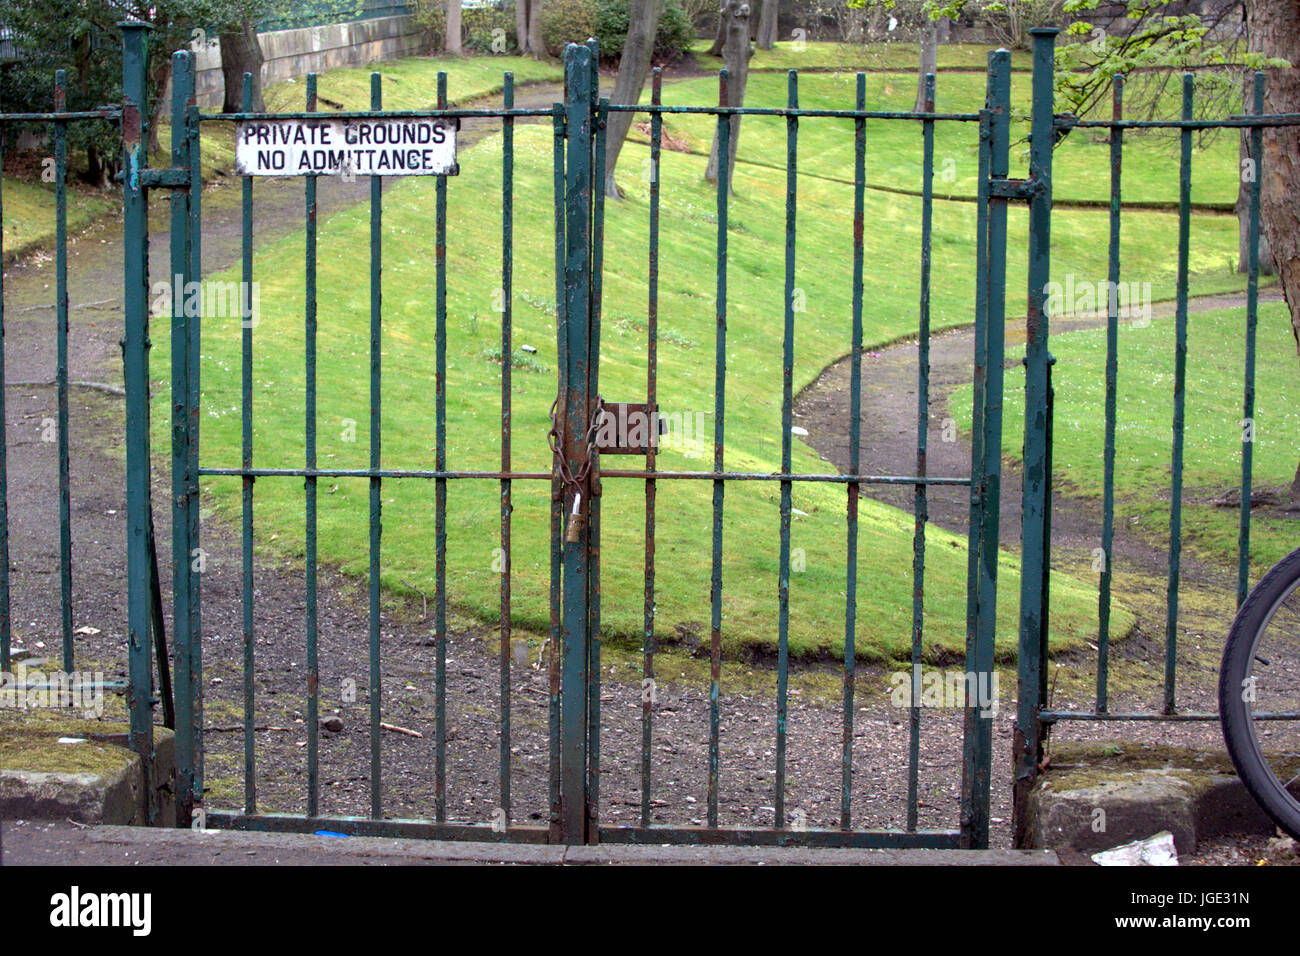 Jardines privados ningún signo de admisión en puertas verde parque privado Foto de stock